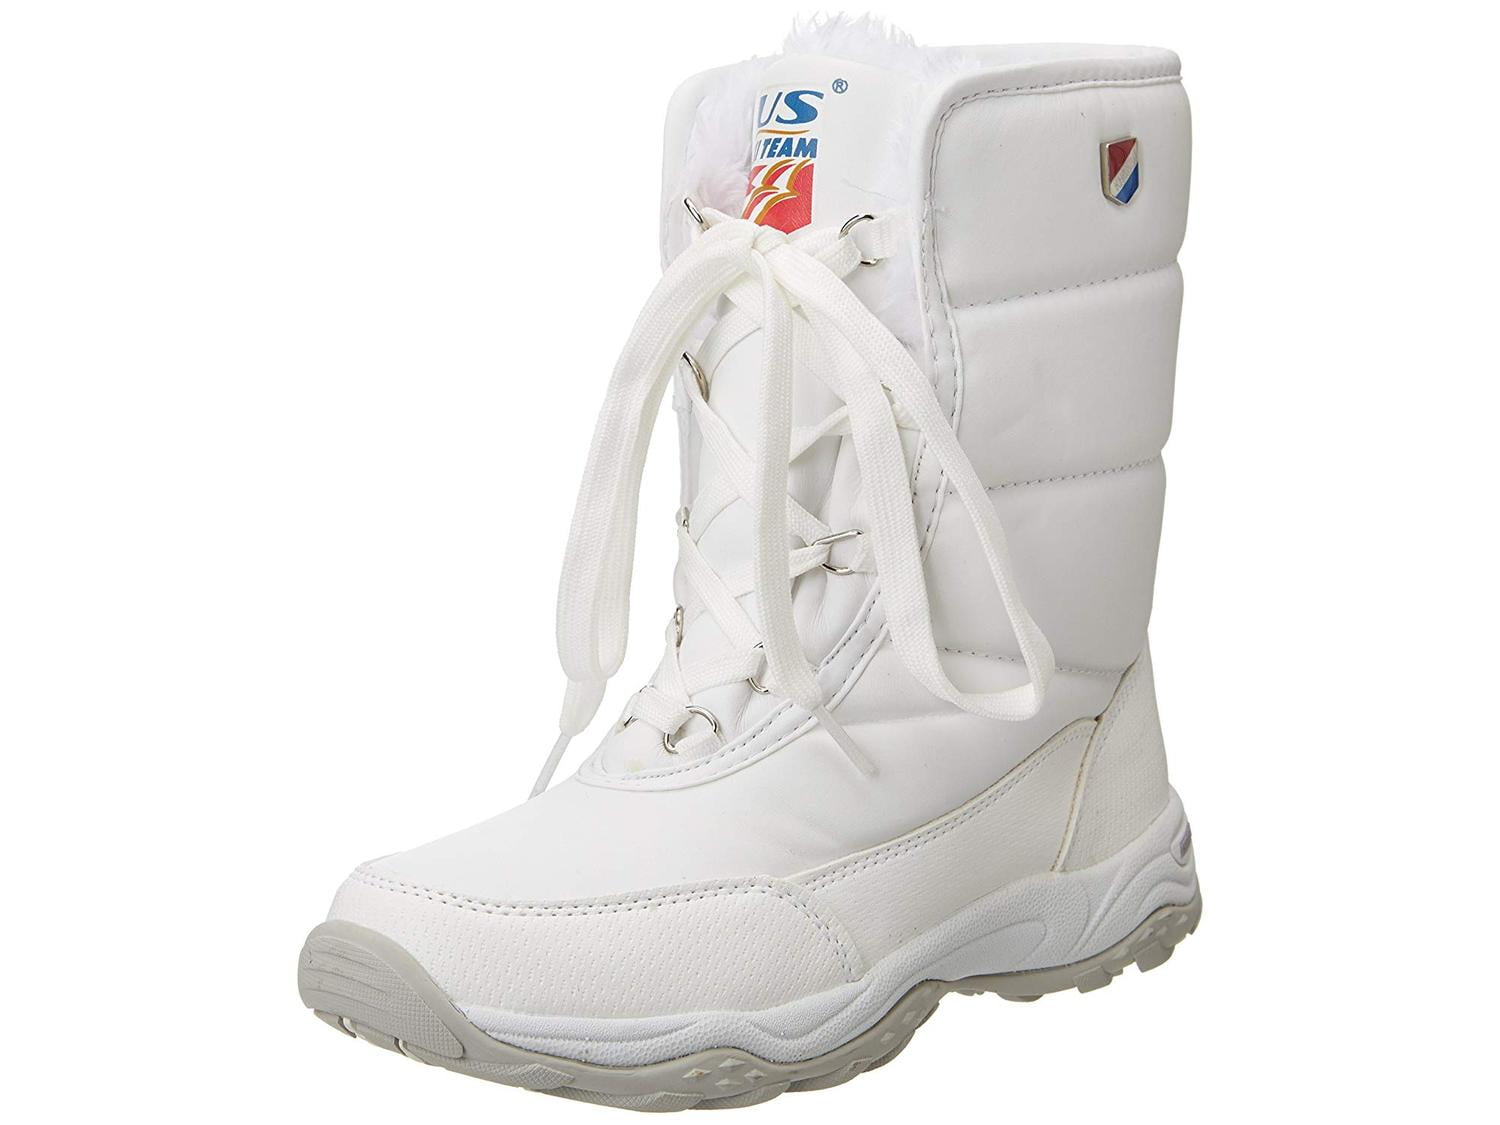 khombu boots white